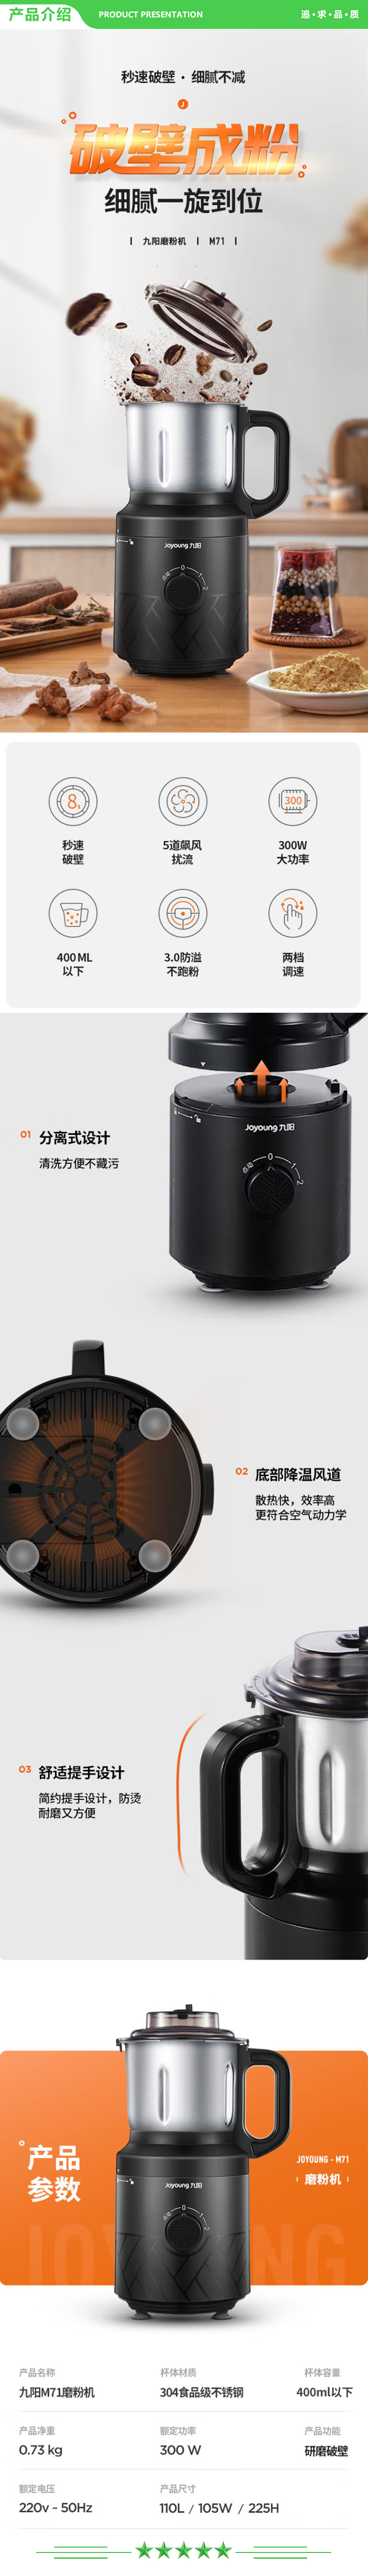 九阳 Joyoung S4-M71 (黑) 料理机磨粉机 五谷杂粮干磨机研磨机辅食机.jpg